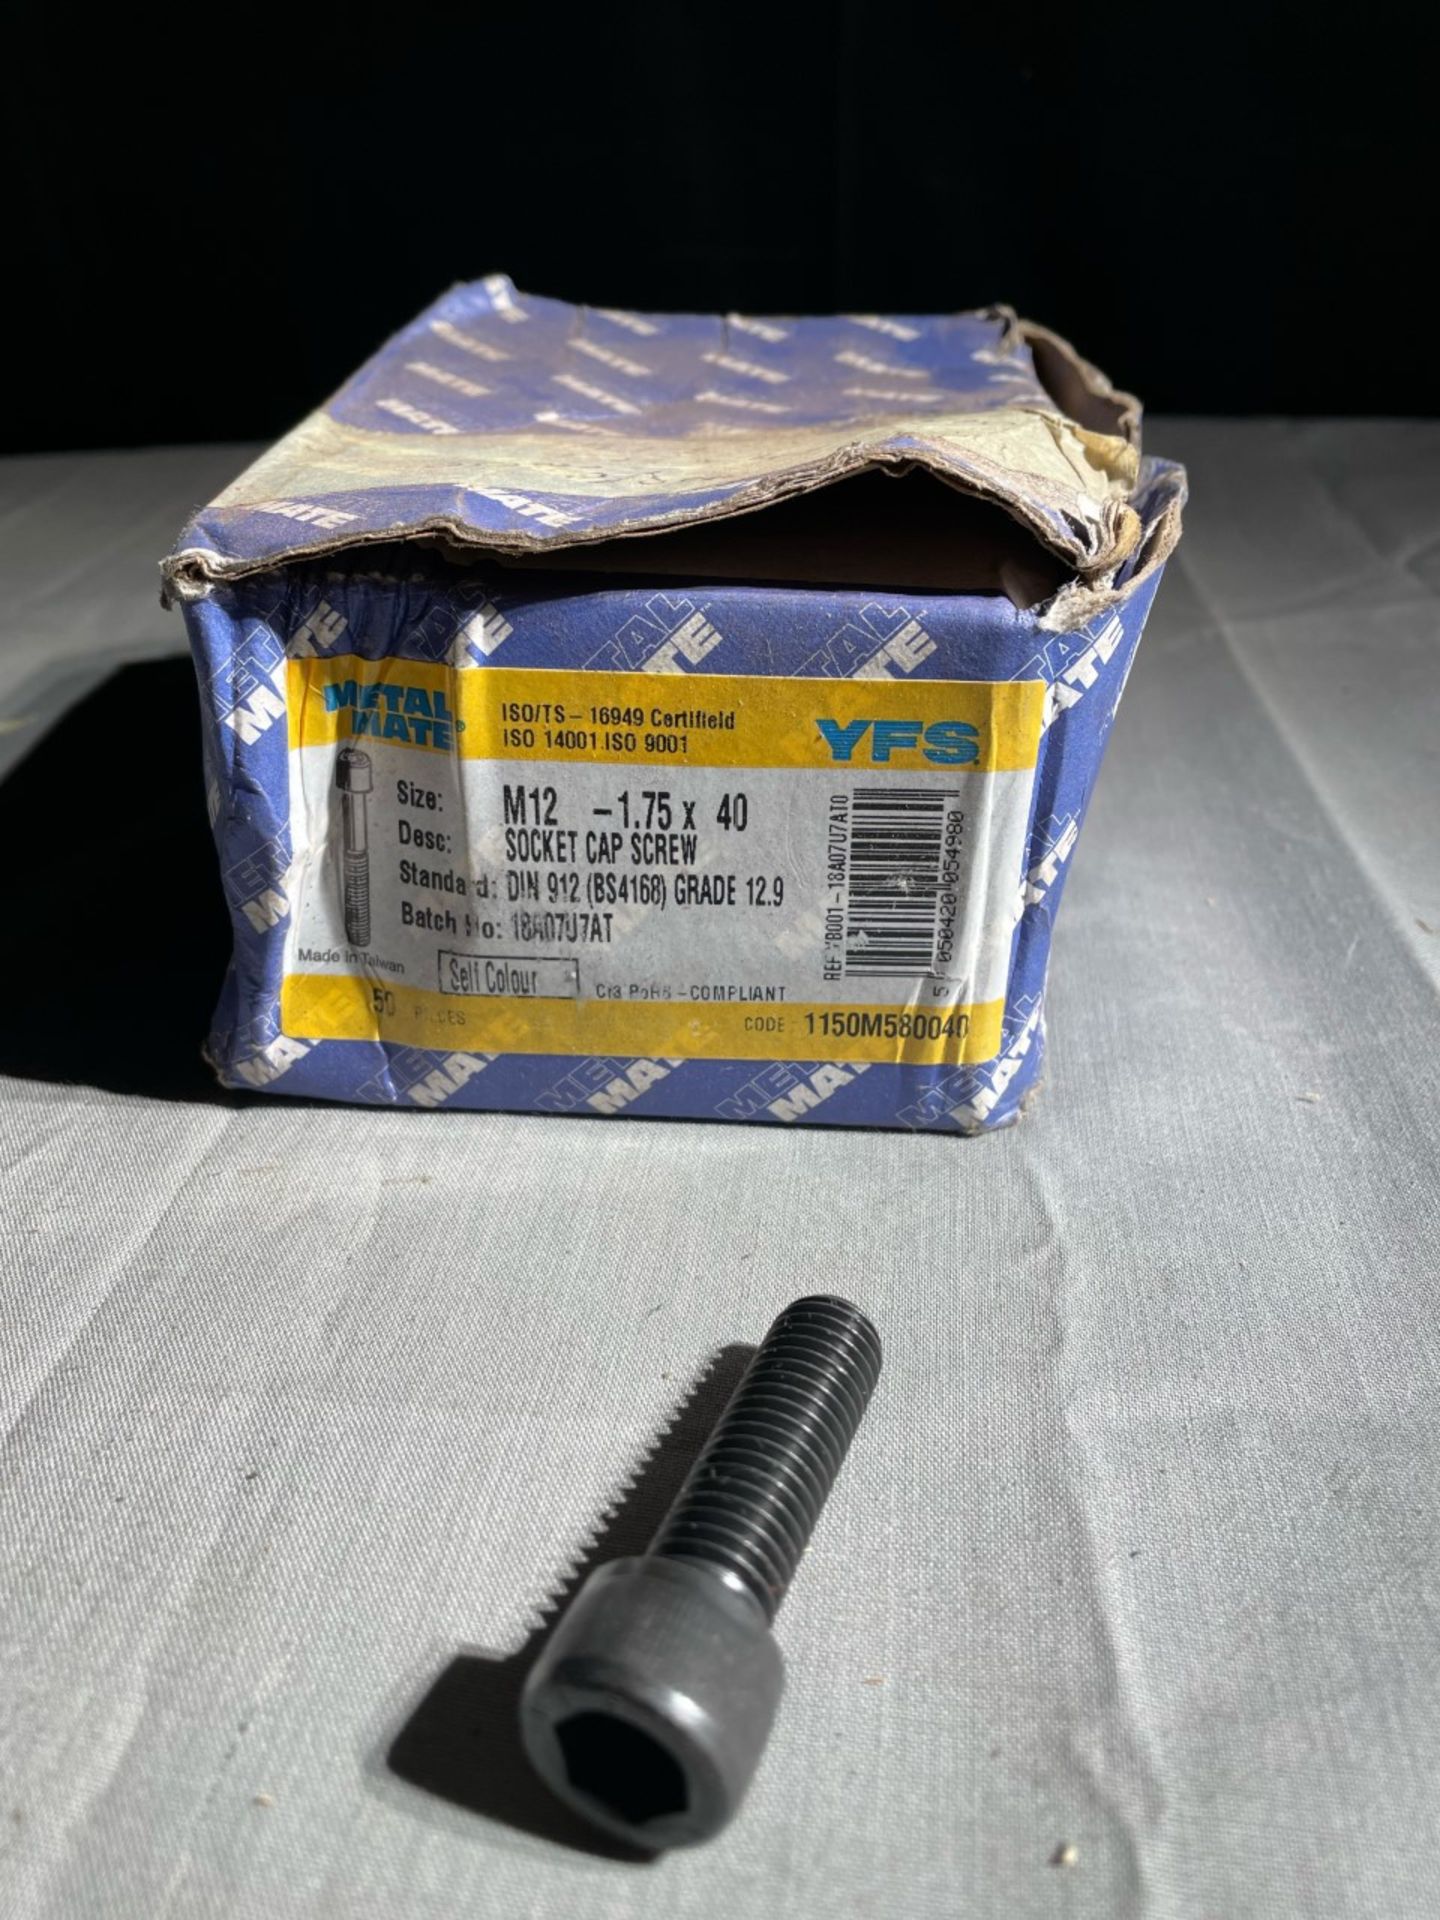 1x box of 40no. M12- 1.75 x 40 Socket cap screw